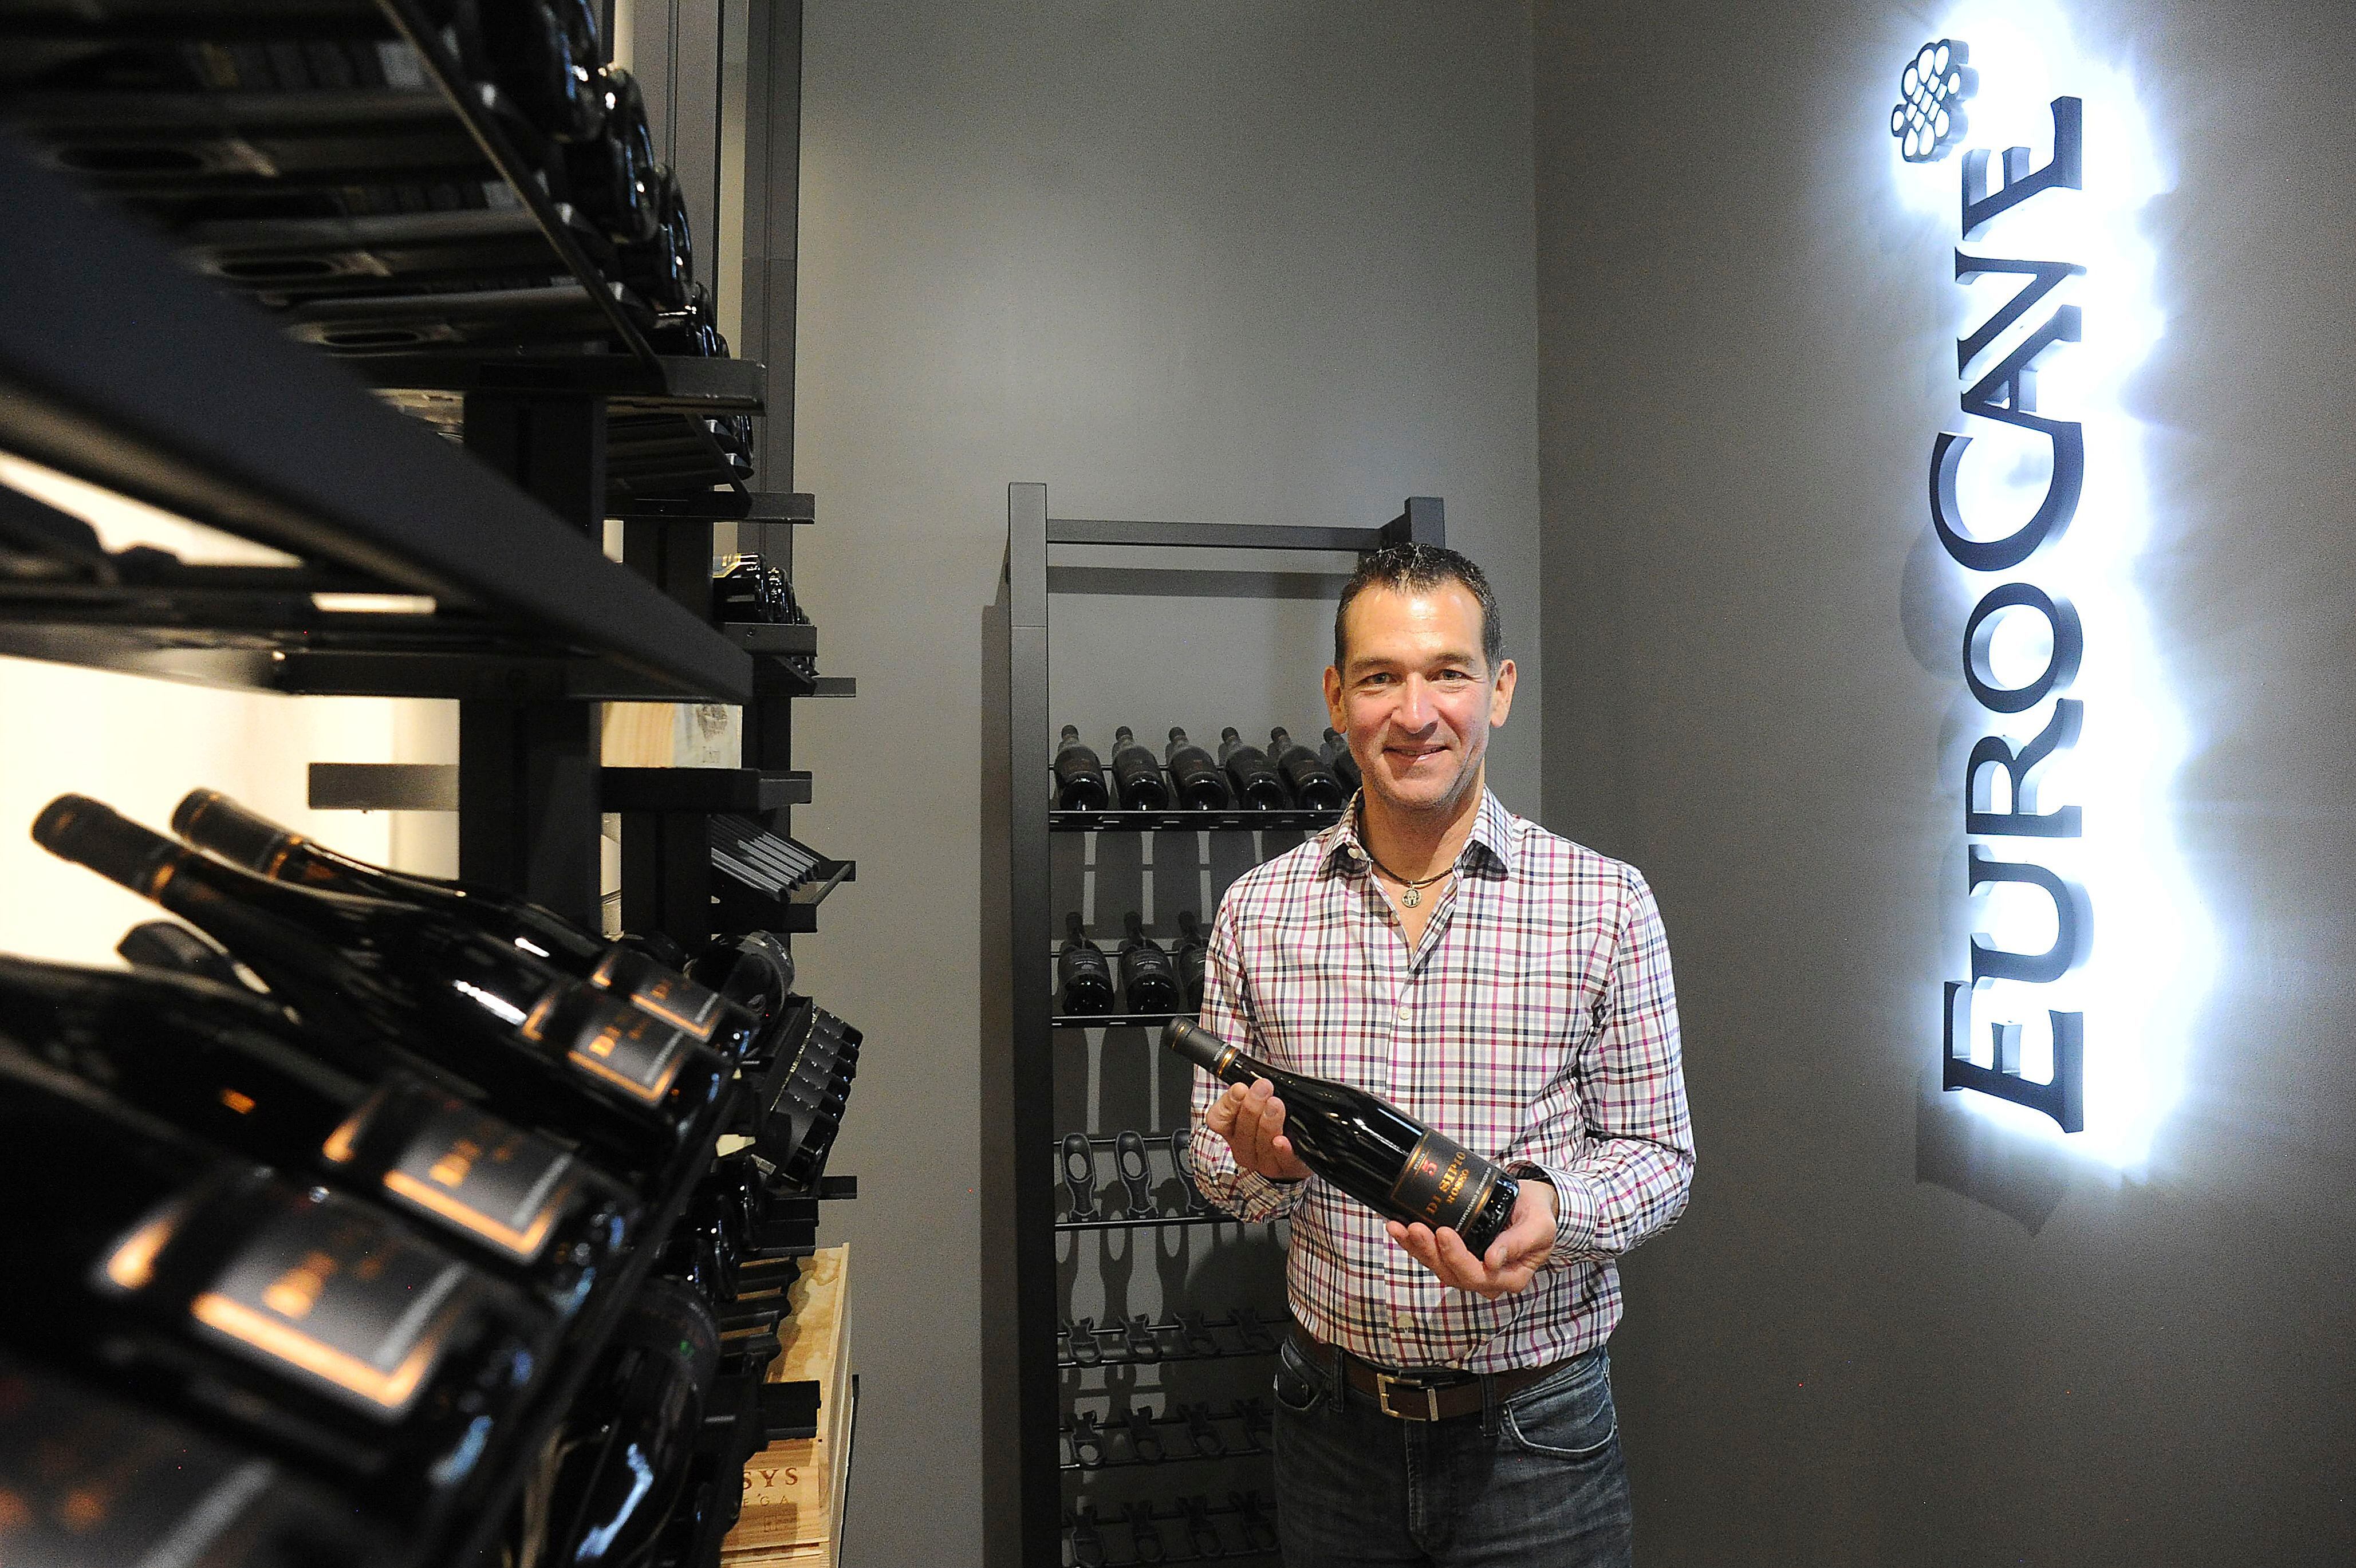 “Son vinos de excelente calidad, exquisitos”, dice Emilio Sanmartí, fundador de Sent Soví. “Es para un público dispuesto a probar algo diferente y de muy buena calidad”.